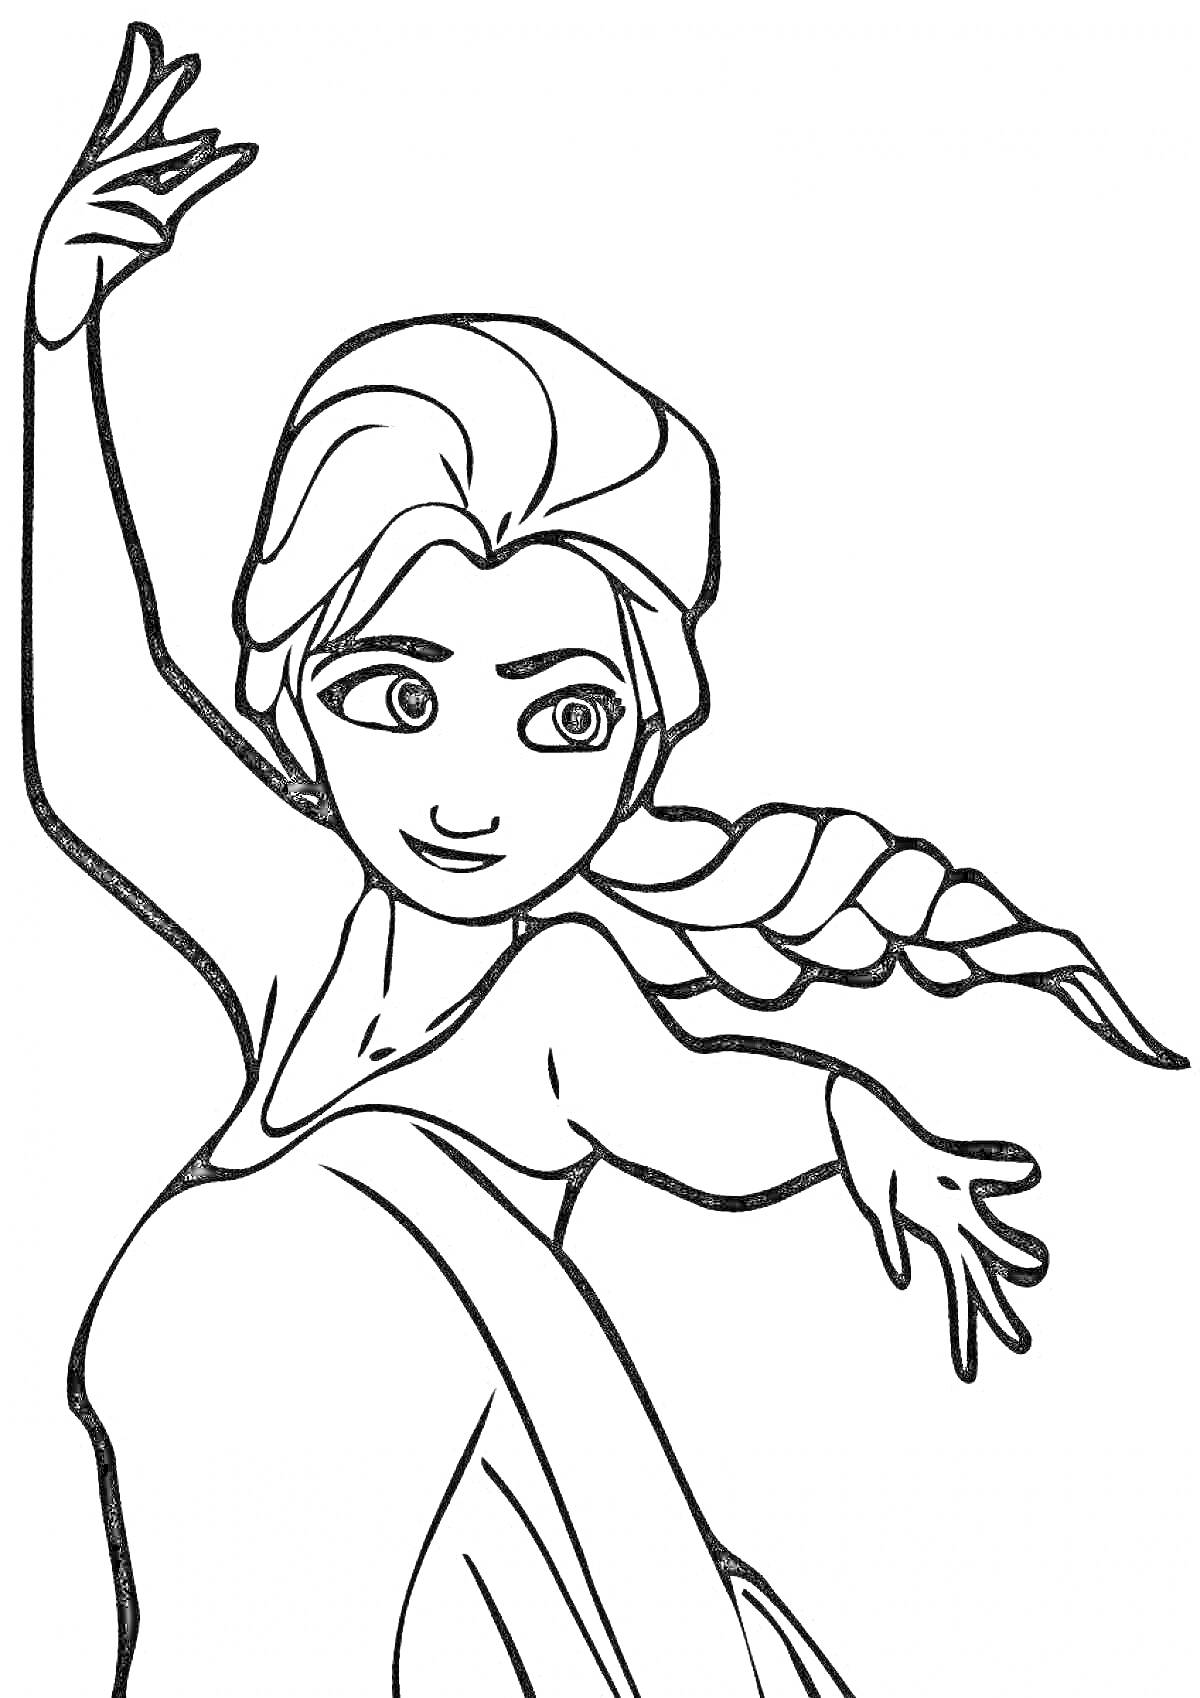 Раскраска Девушка с двумя заплетёнными косами, вытянутыми вперед руками и длинным платьем